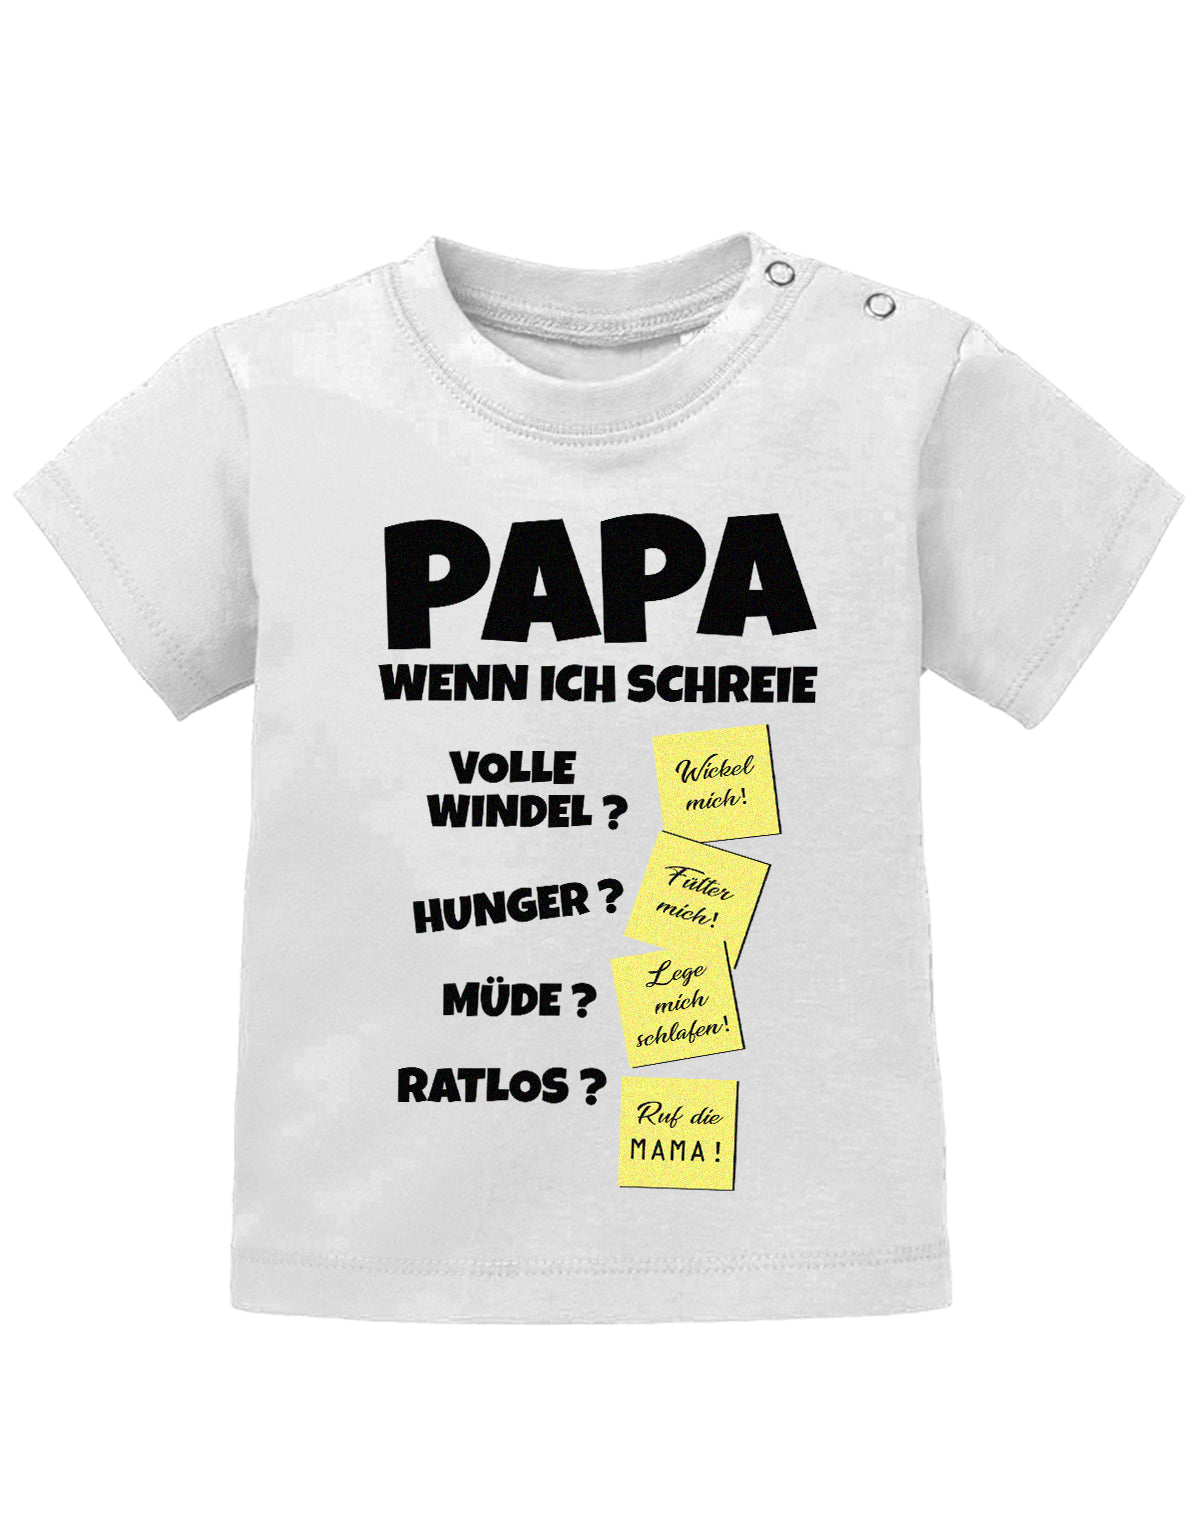 Lustiges süßes Sprüche Baby Shirt Papa wenn ich schreie - Notizen Lösungen. Weiss